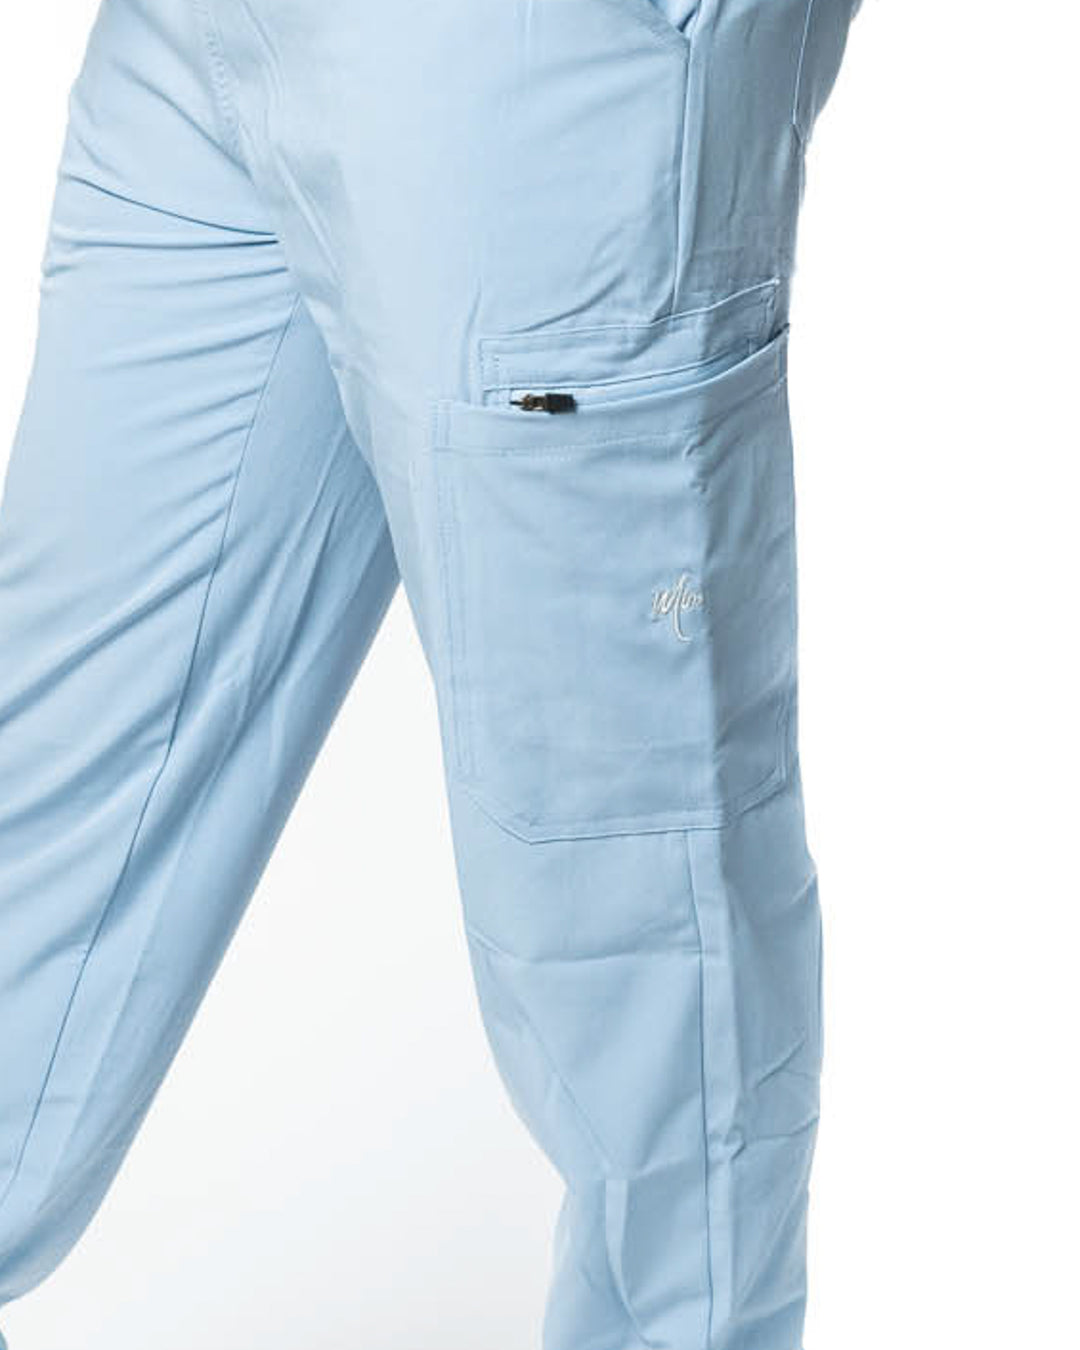 Men's Slate Blue Jogger Scrub Pants